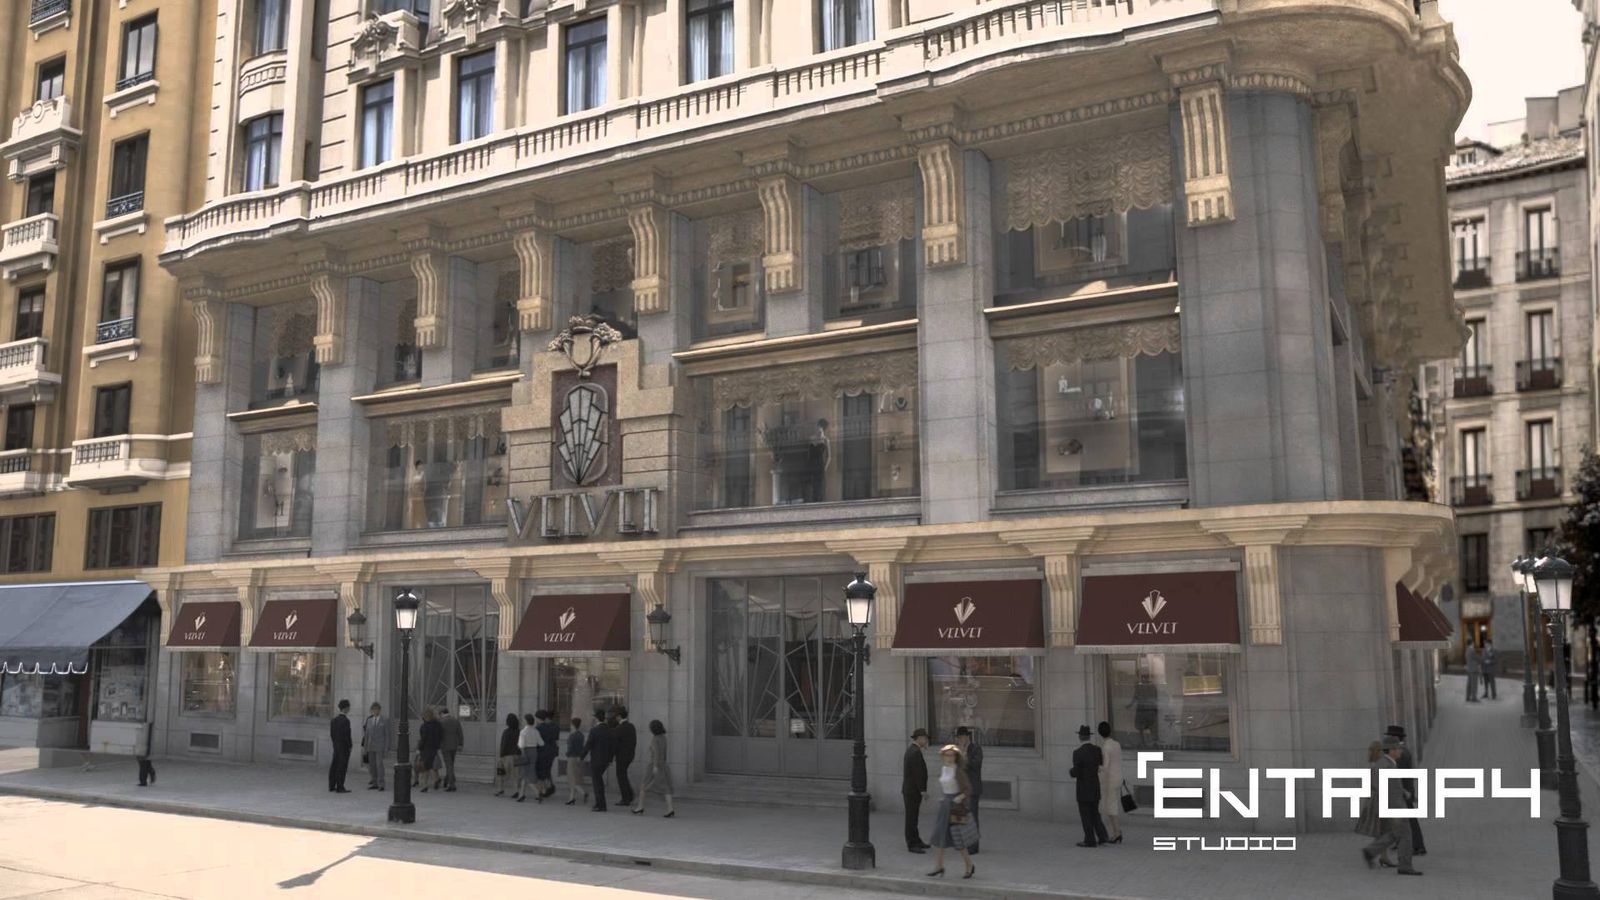 Foto: Recreación de la fachada de las Galerías Velvet en 3D